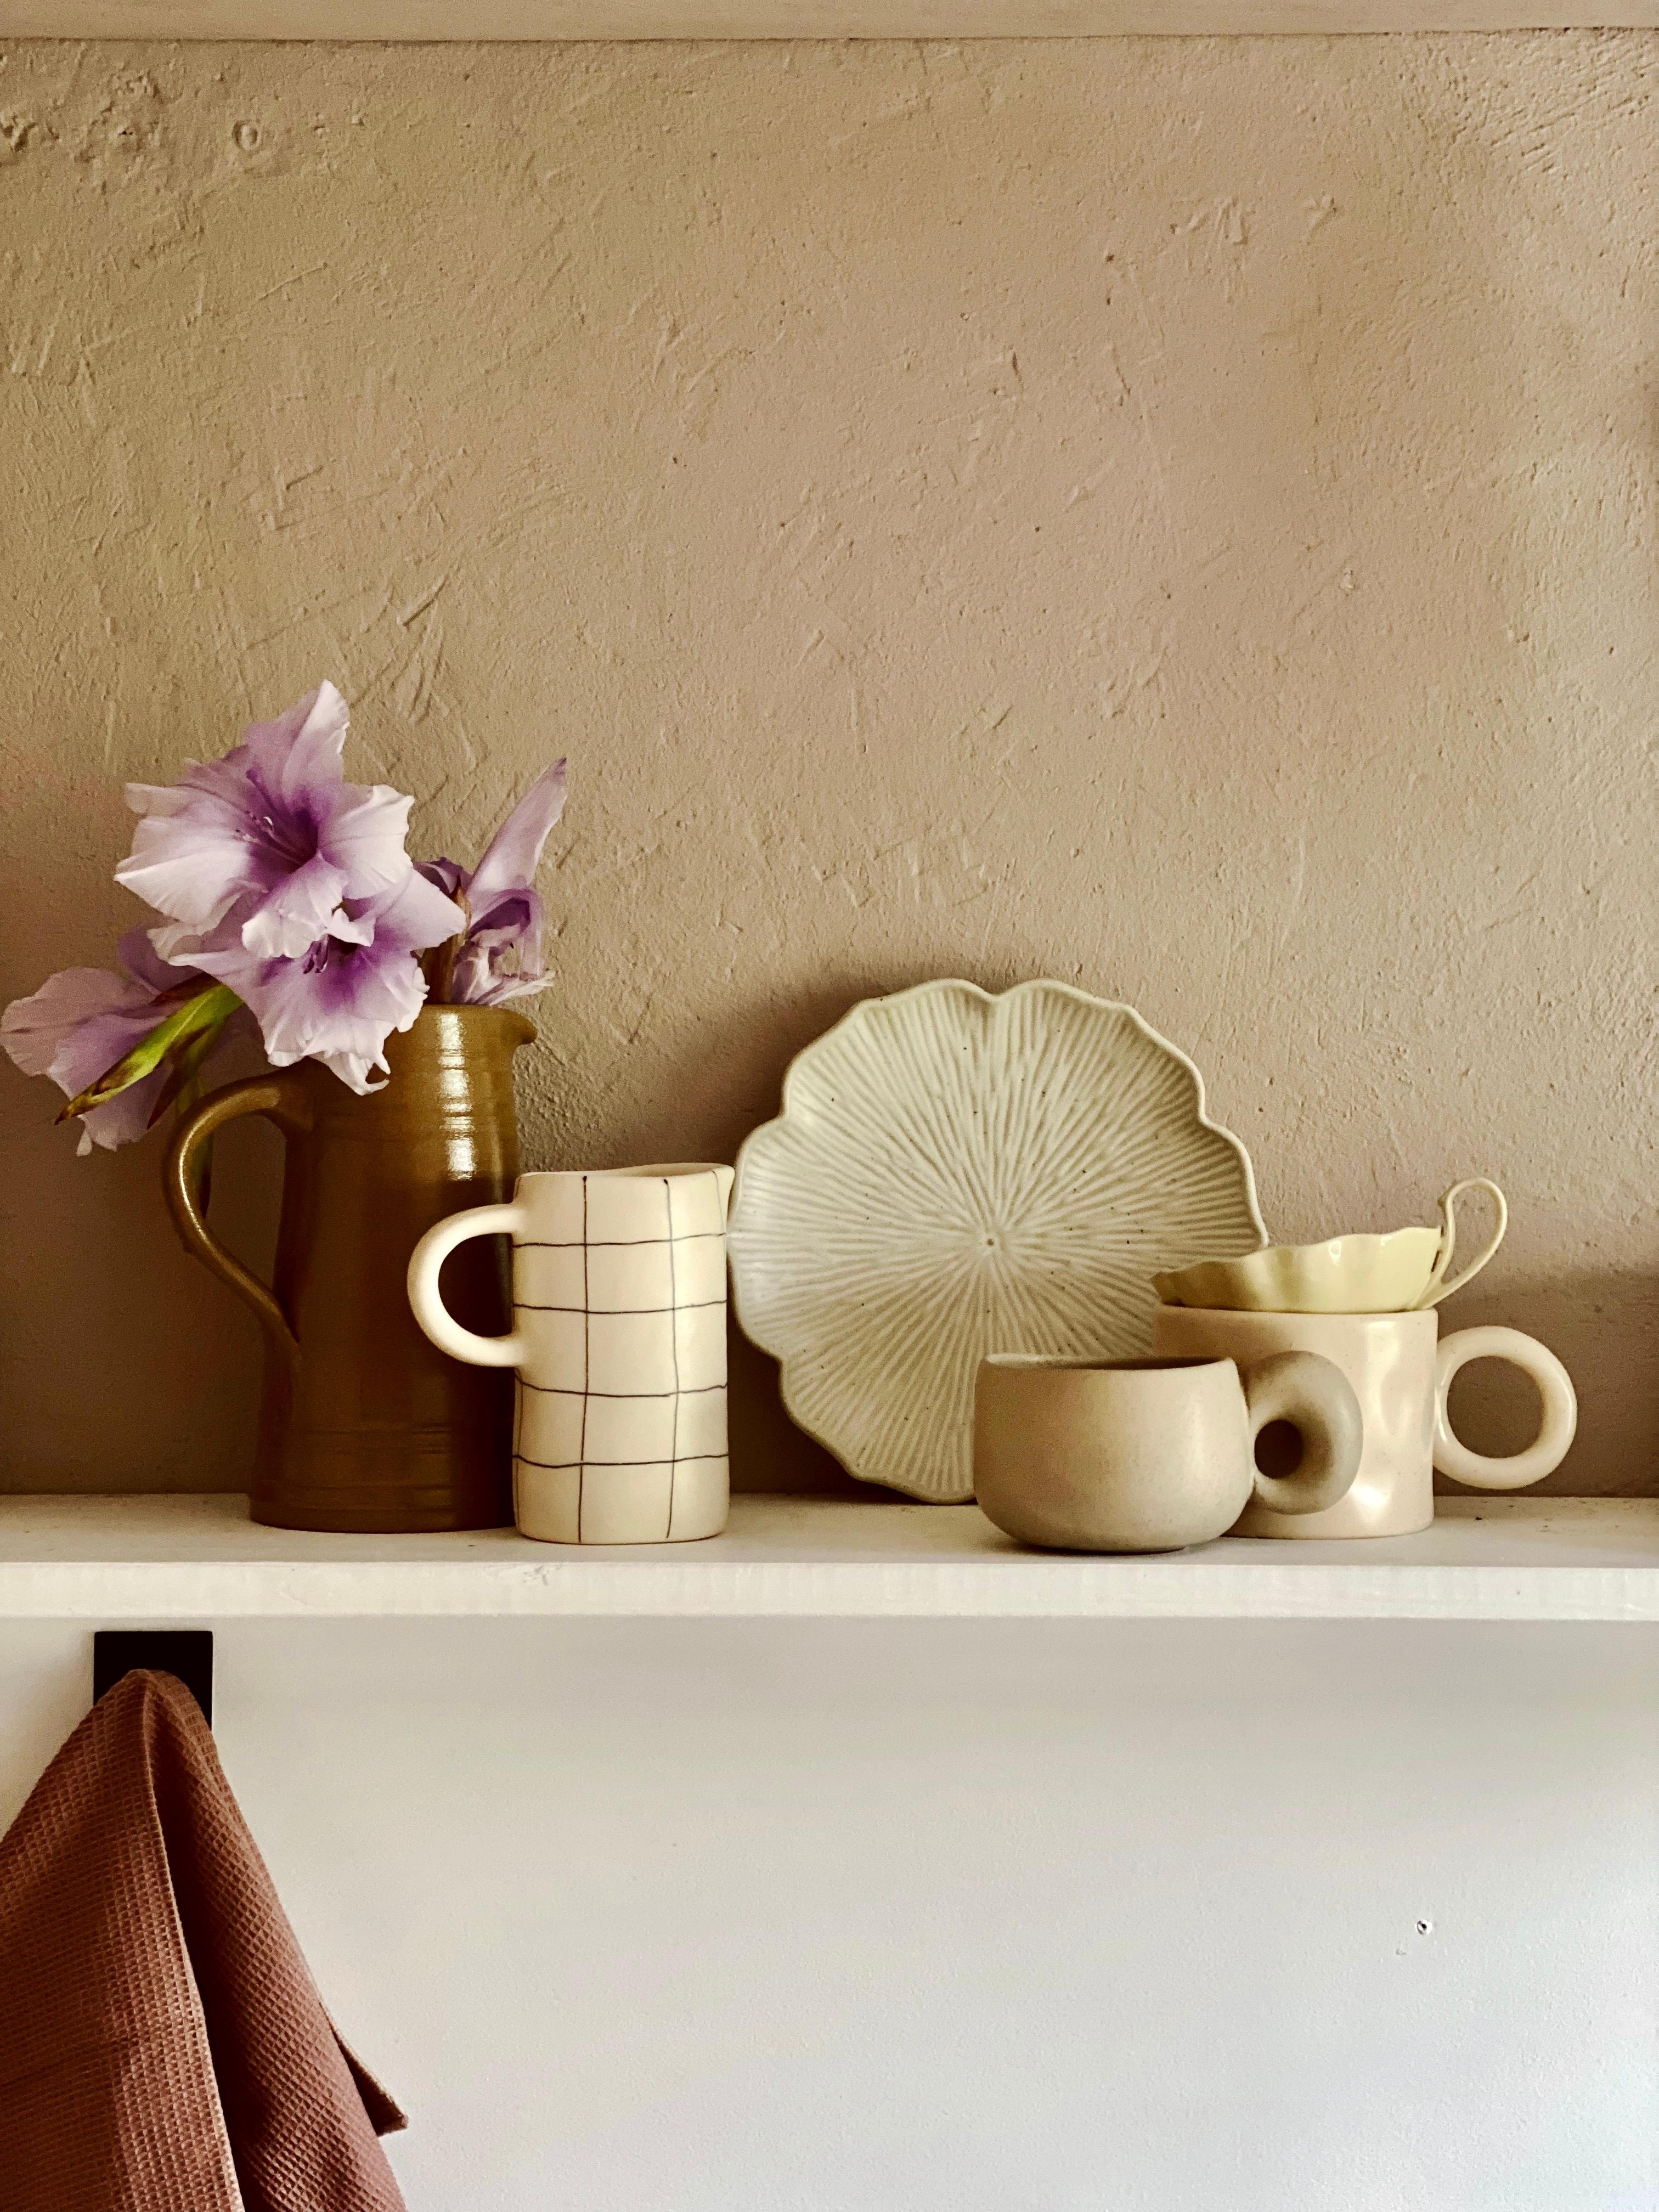 ceramics ❤️
#keramik #küche #blumen #tonal 